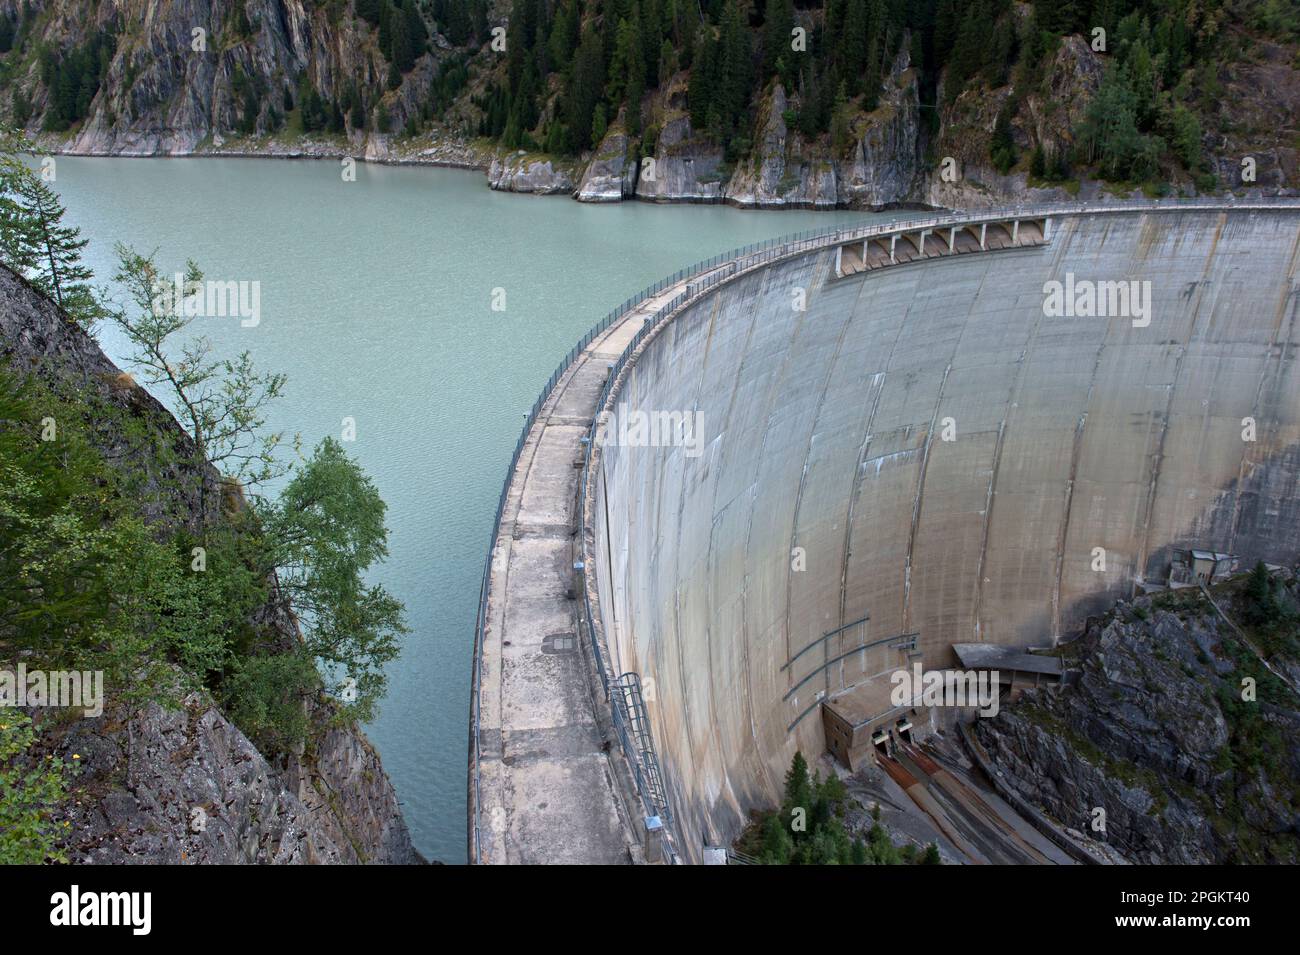 Arch Damm des Gibidum Dammes, Blatten bei Naters, Wallis, Schweiz Stockfoto